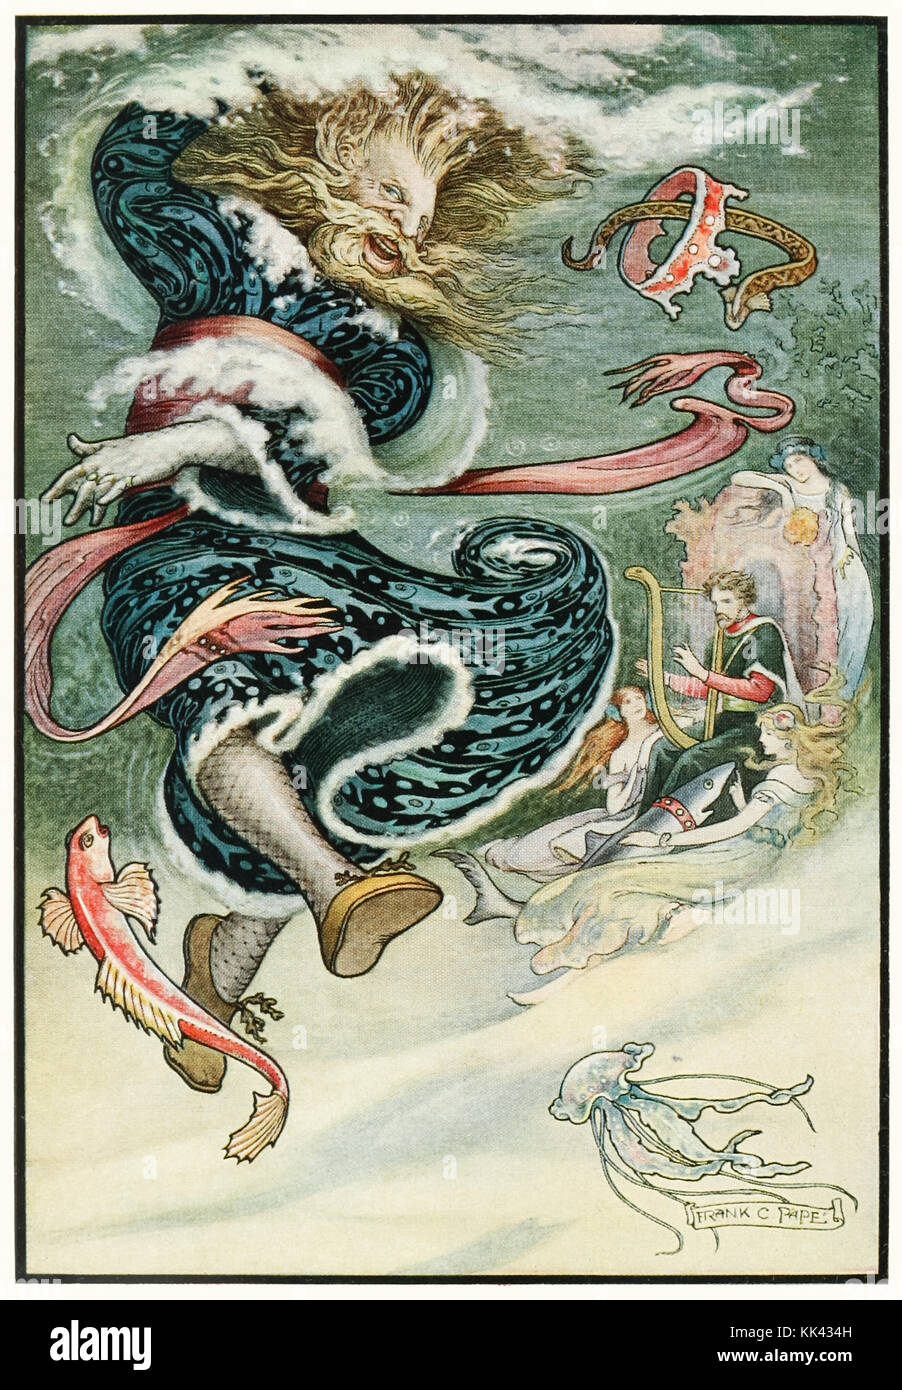 'L'eau des danses Tsar' de 'l'histoire russe Livre' par Richard Wilson (1878-1916) illustration par Frank C. Papé (1878-1972). Voir plus d'informations ci-dessous. Banque D'Images